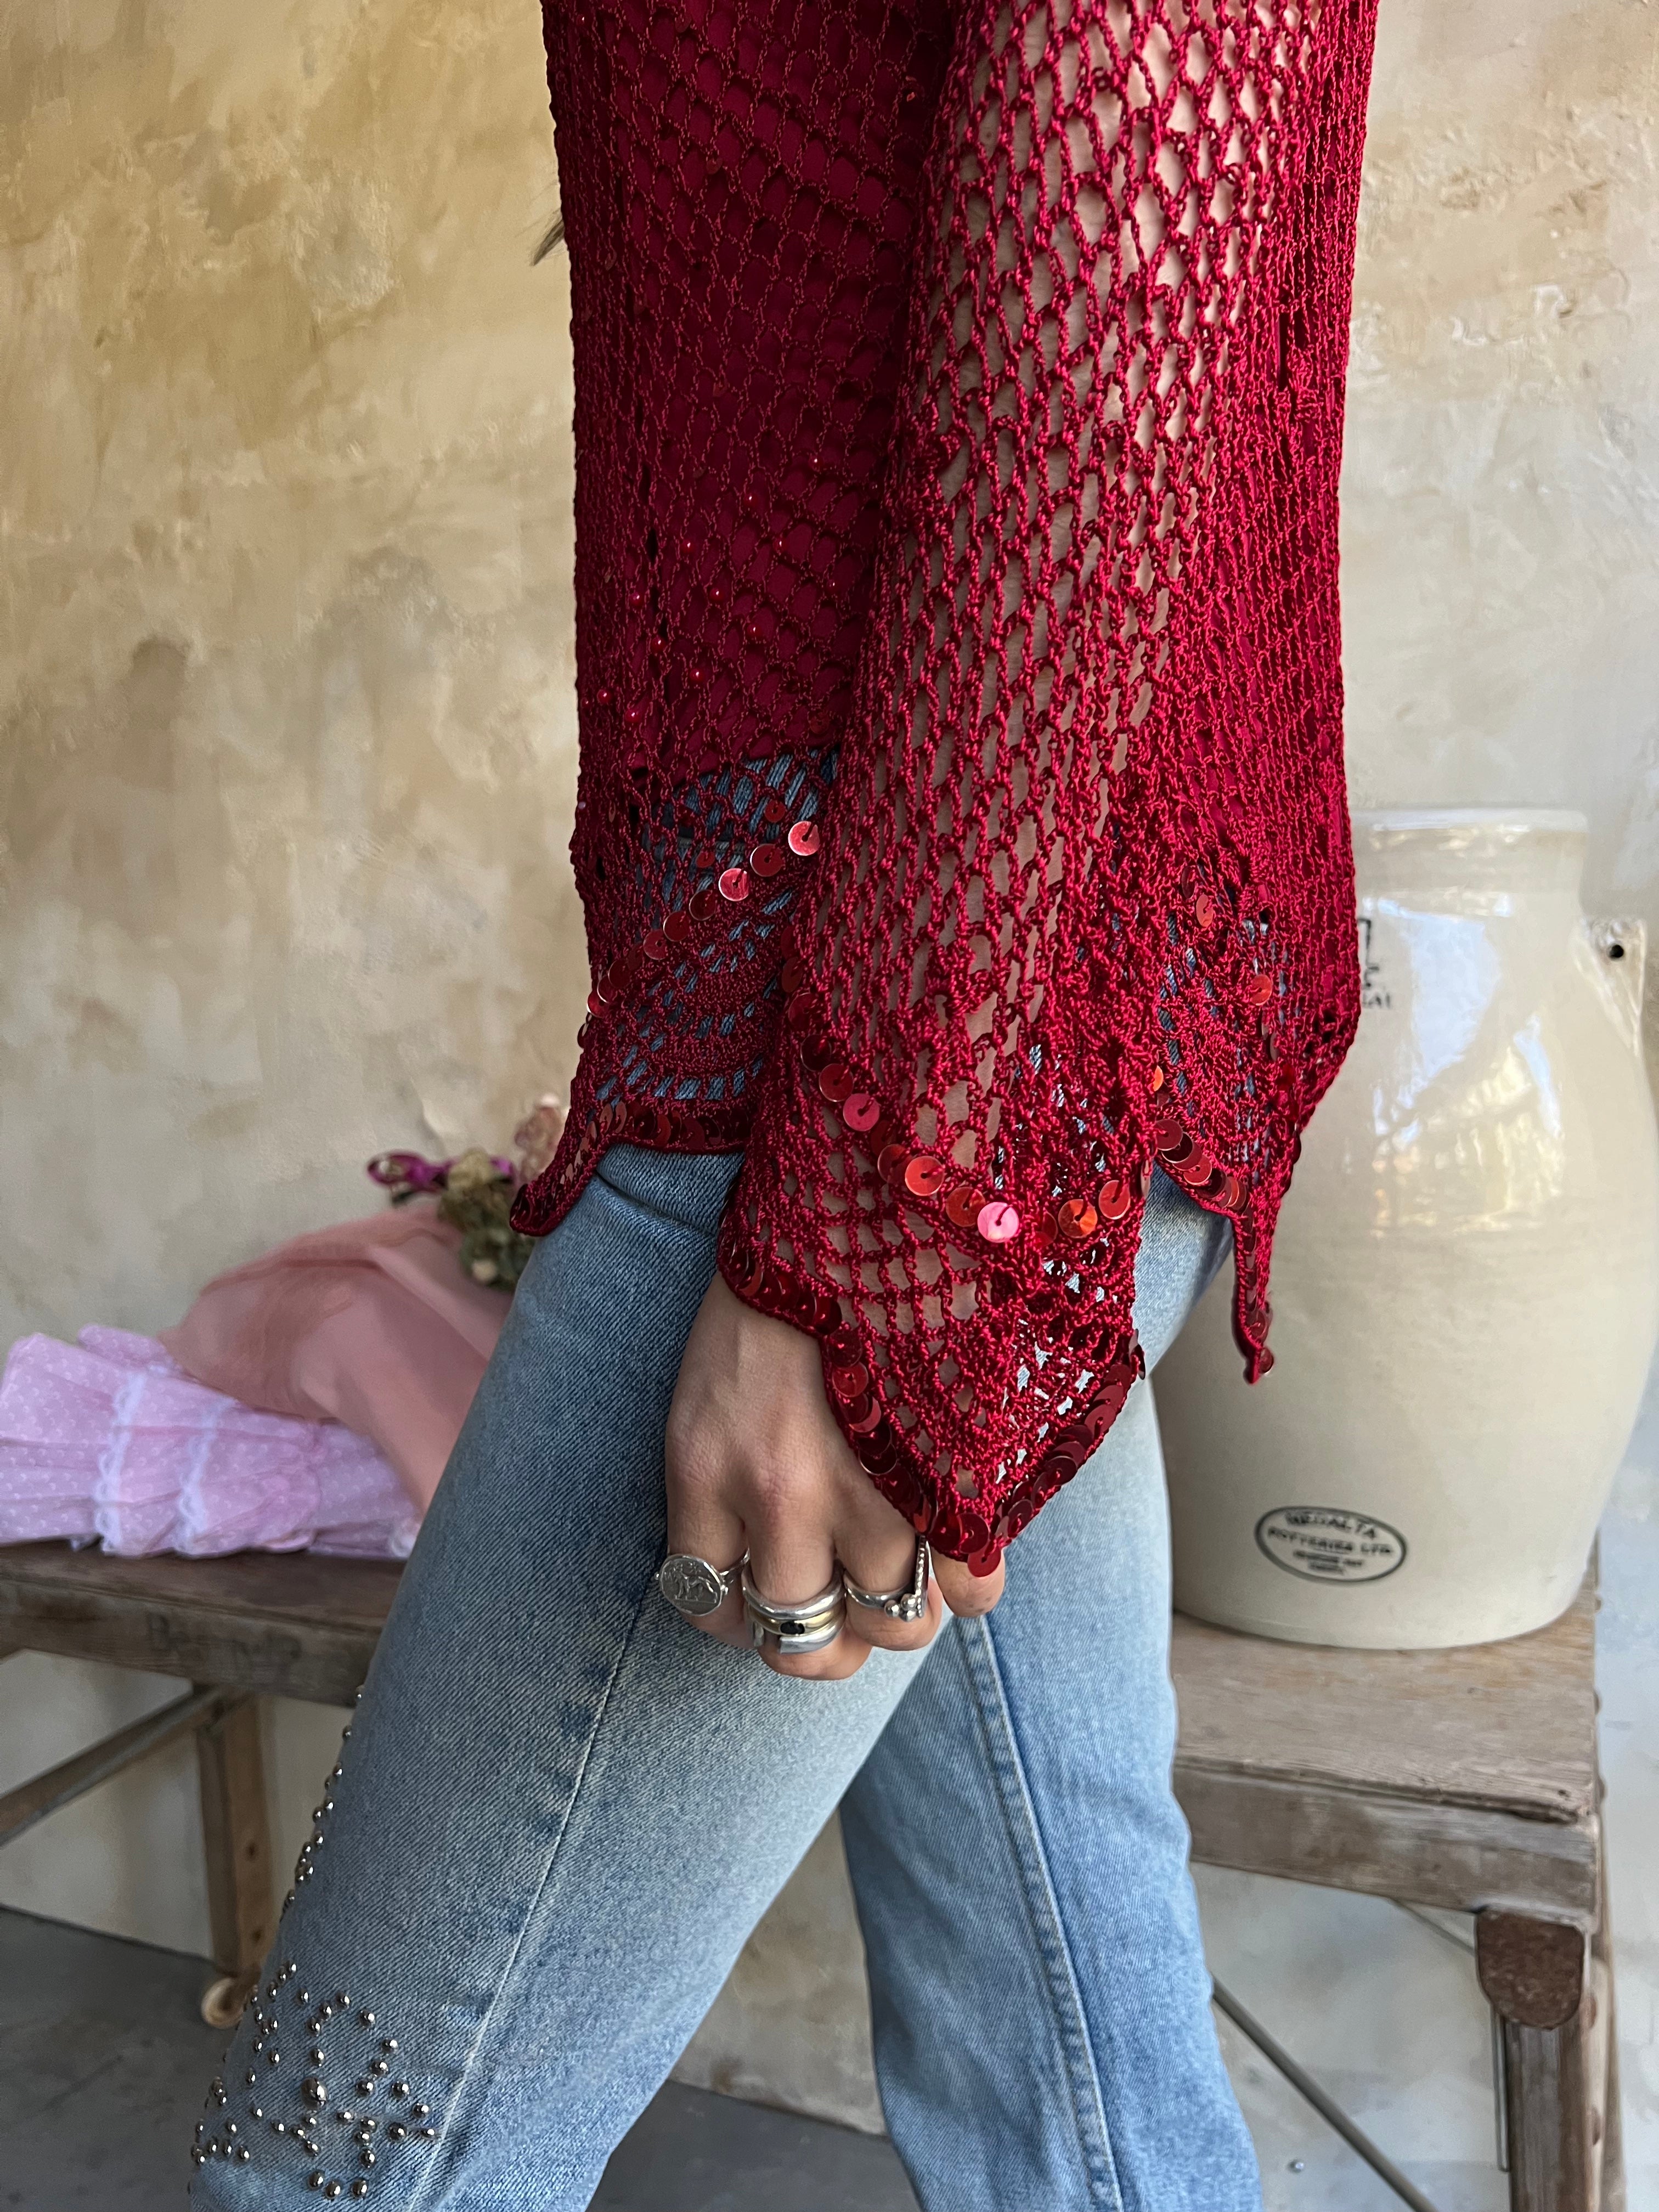 Red Sequin Long-sleeve Crochet Top